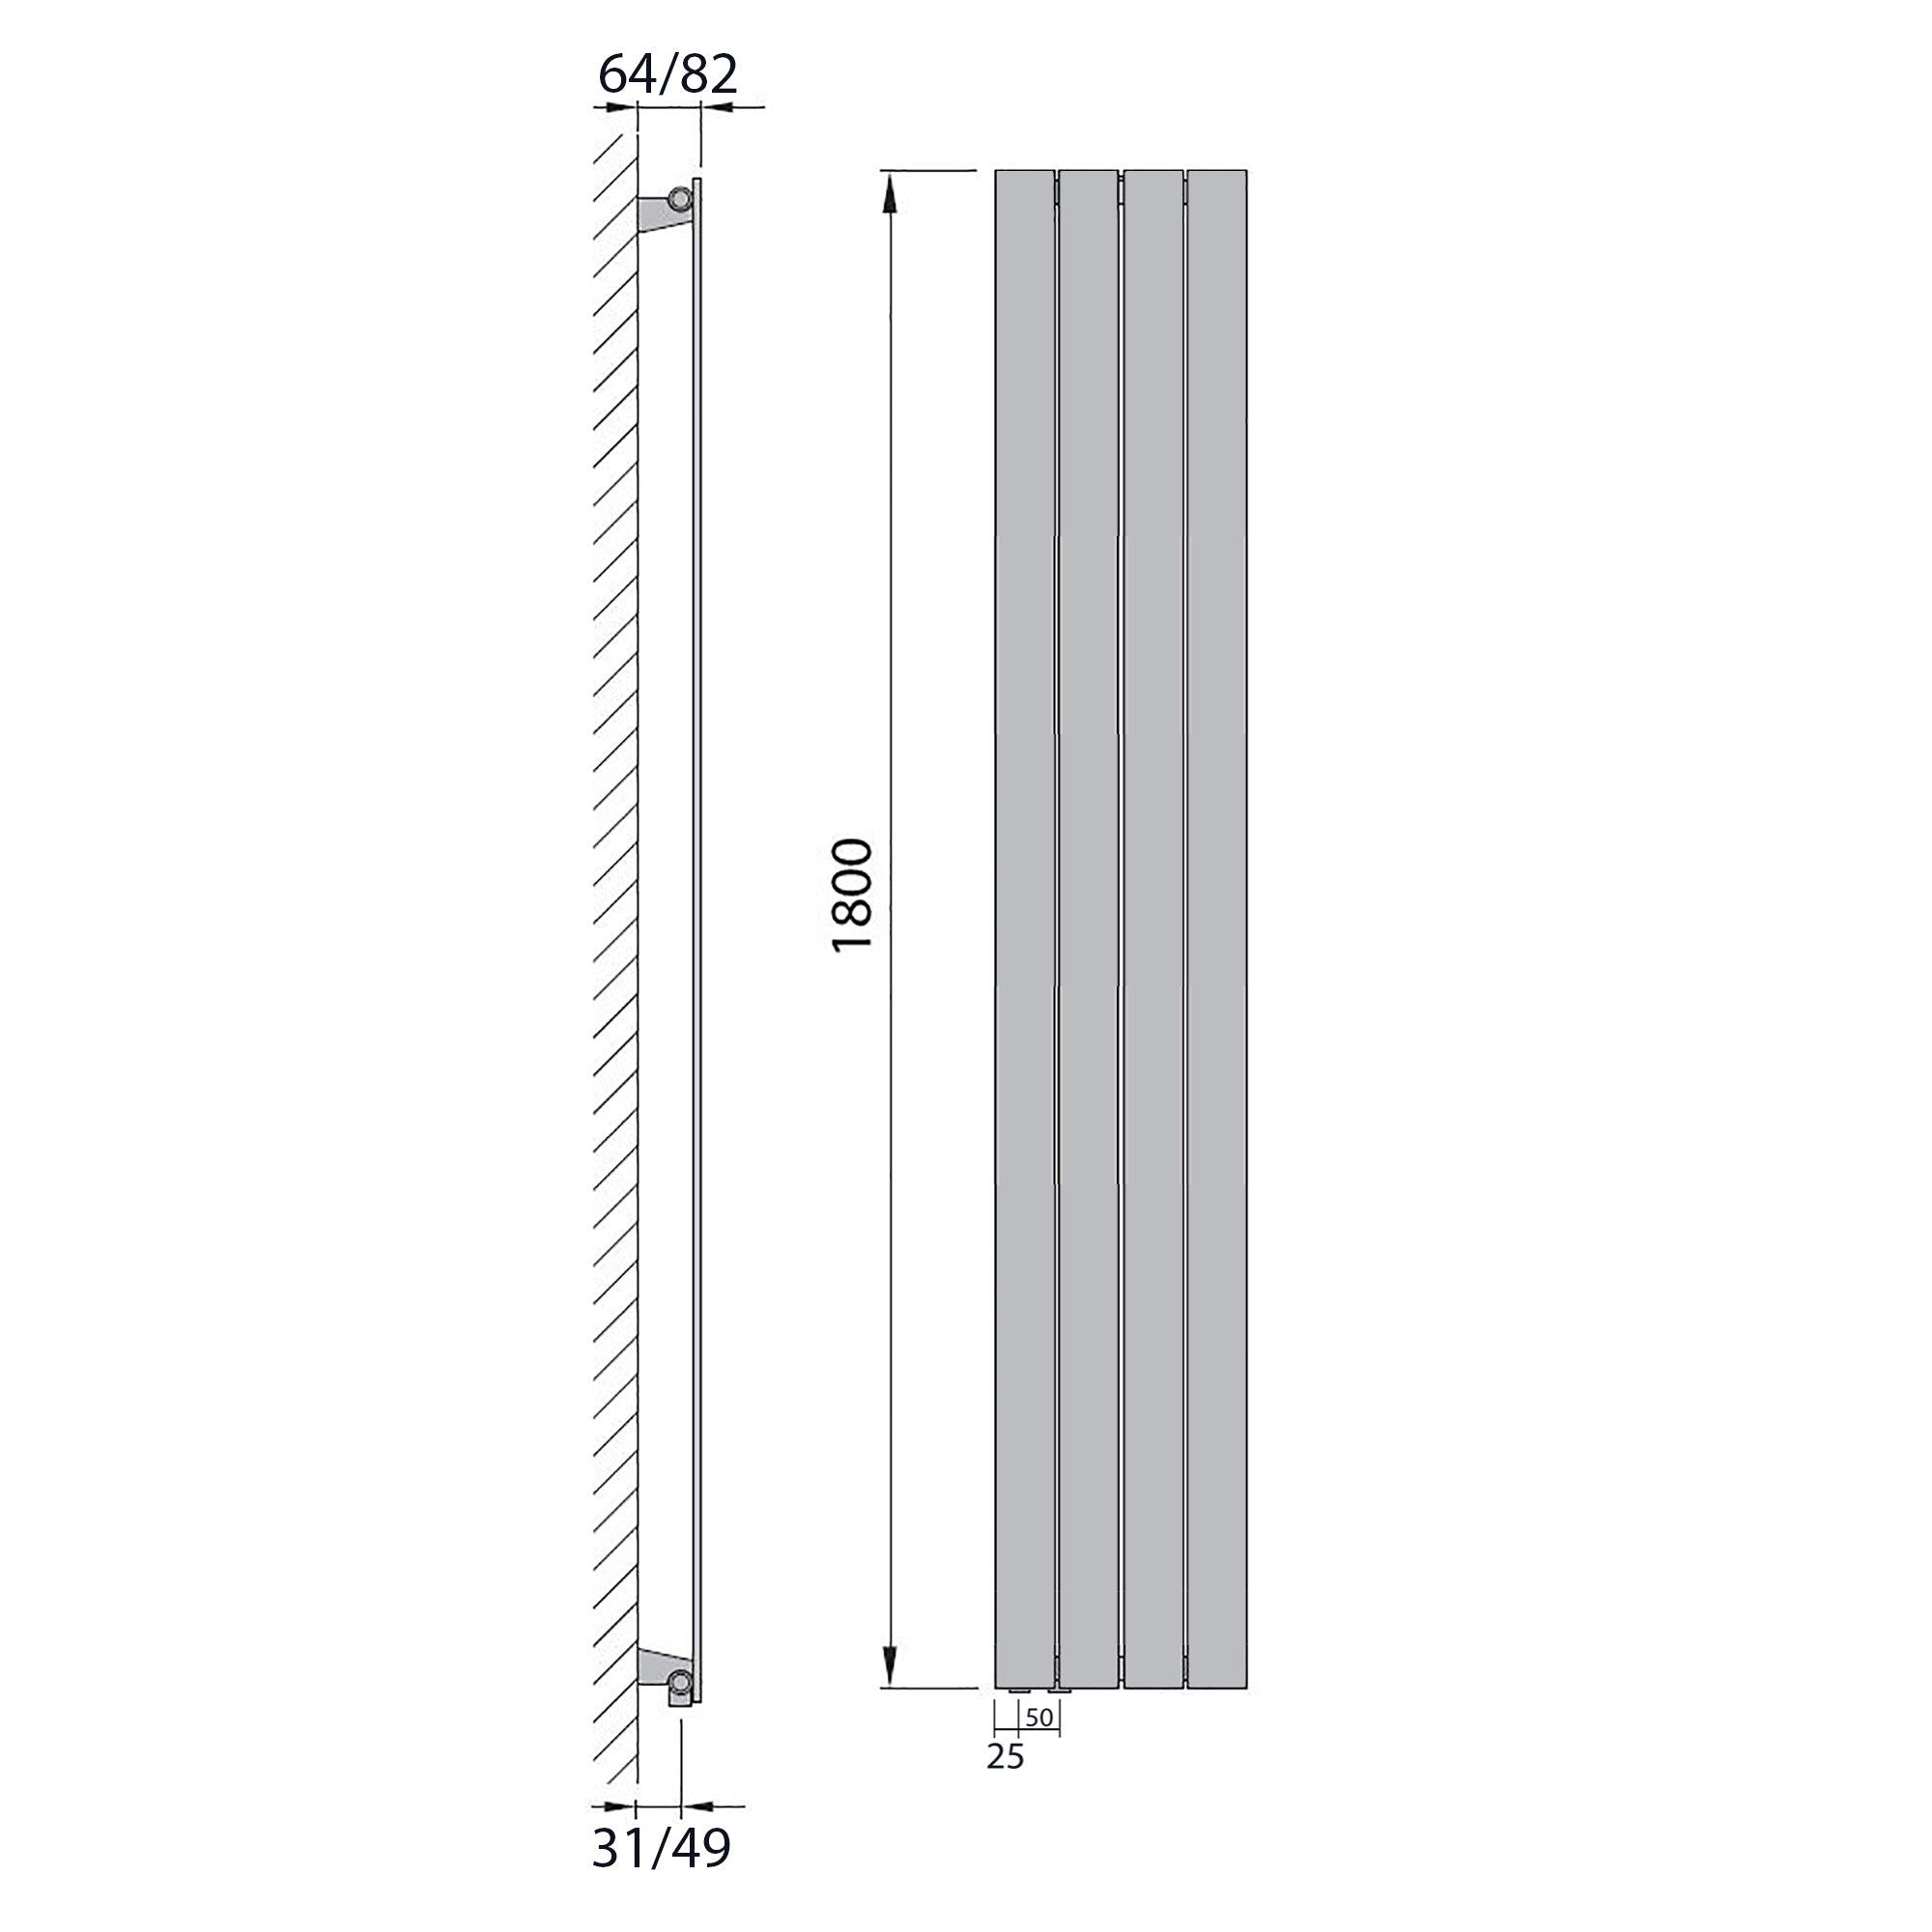 Design Paneelheizkörper Bad Flachheizkörper 1800 x 298 mit Anschluss links | mit versetztem Mittelanschluss flach technische Zeichnung - heizkoerper.shop